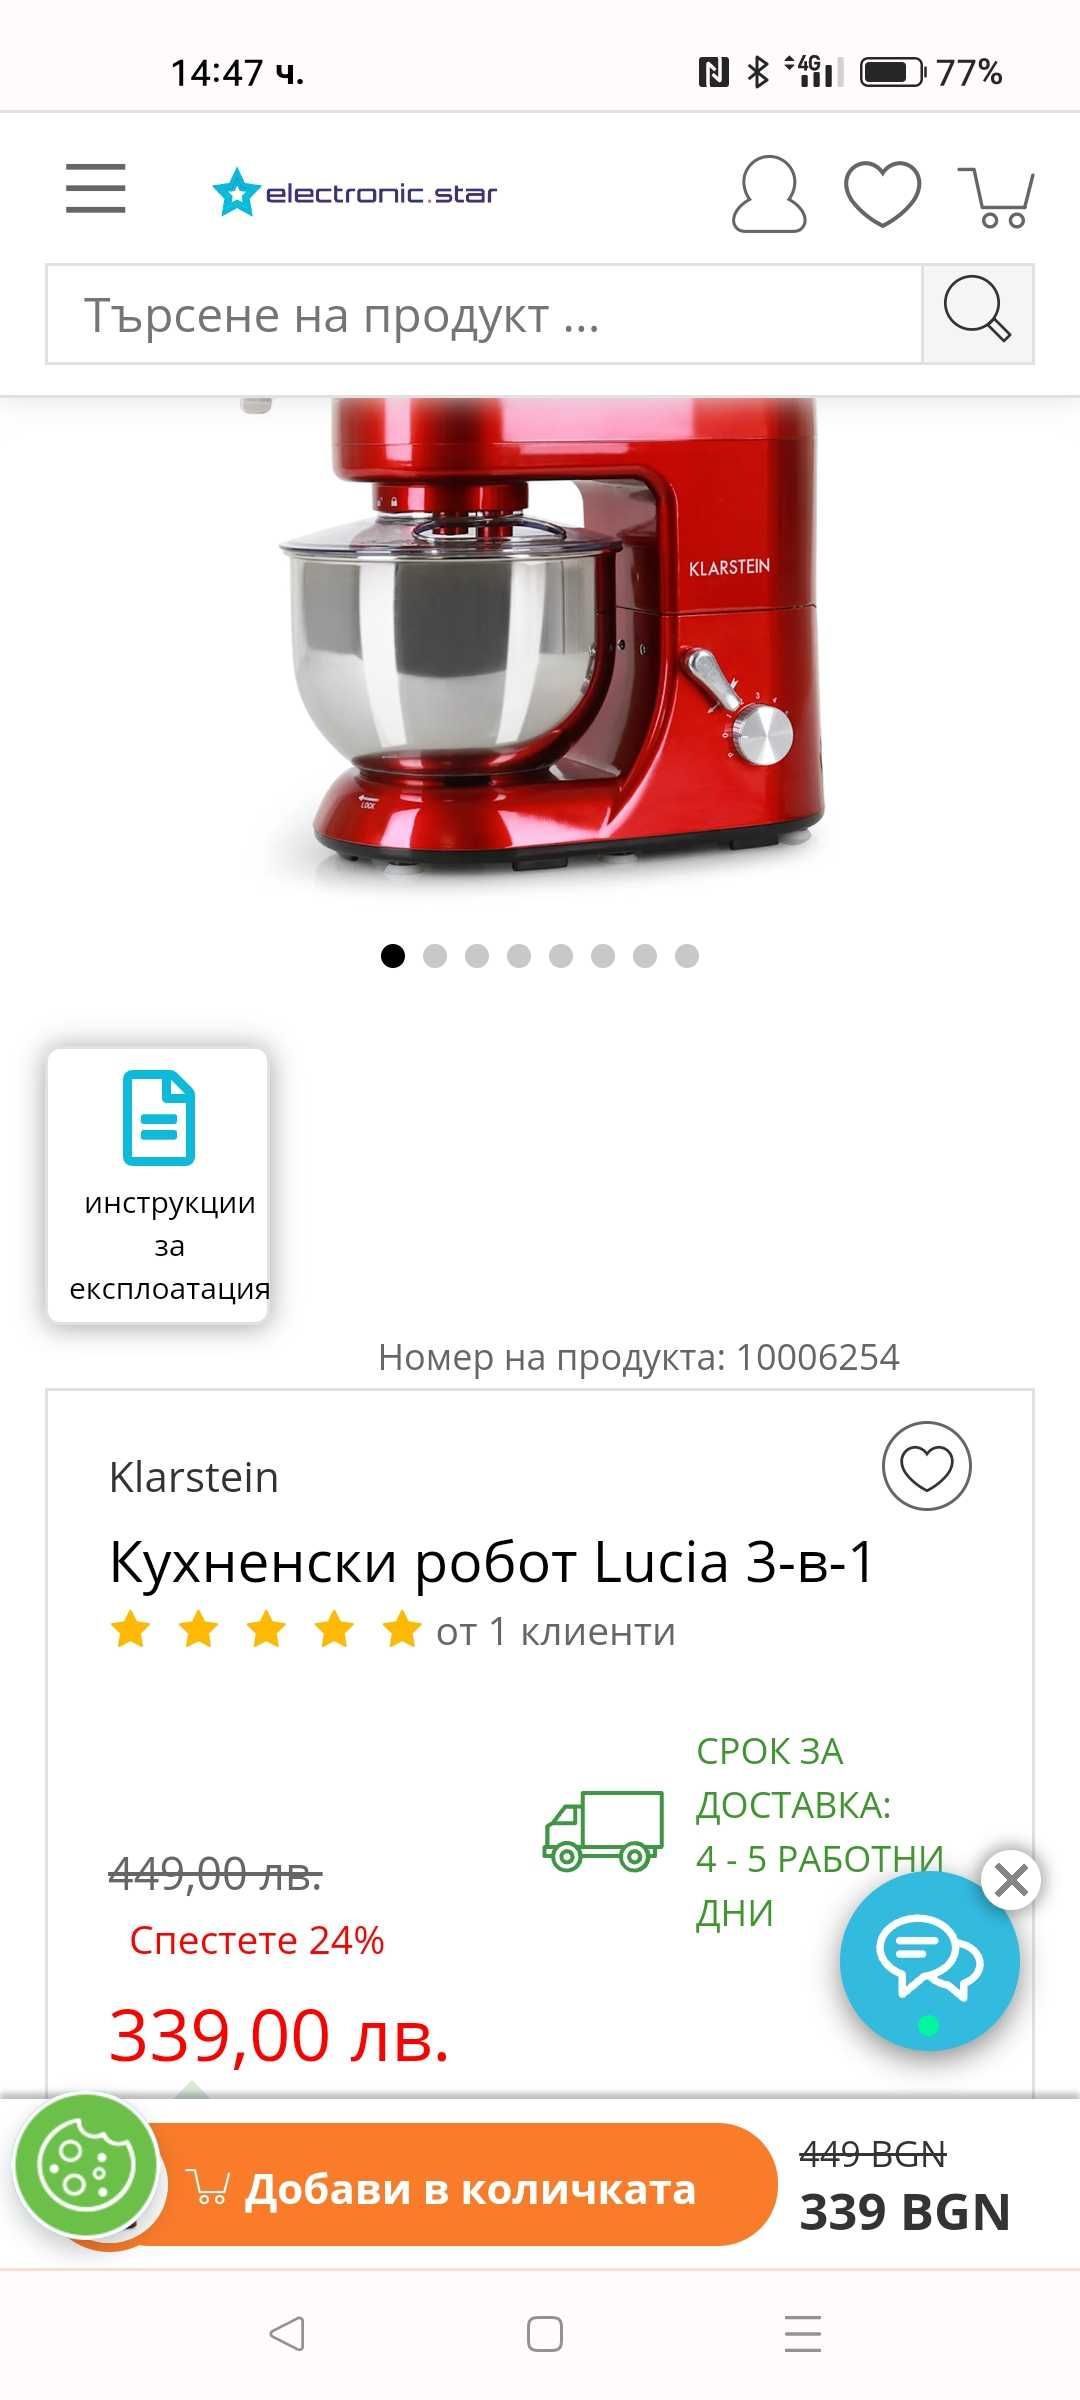 Кухненски робот Lucia 3-в-1